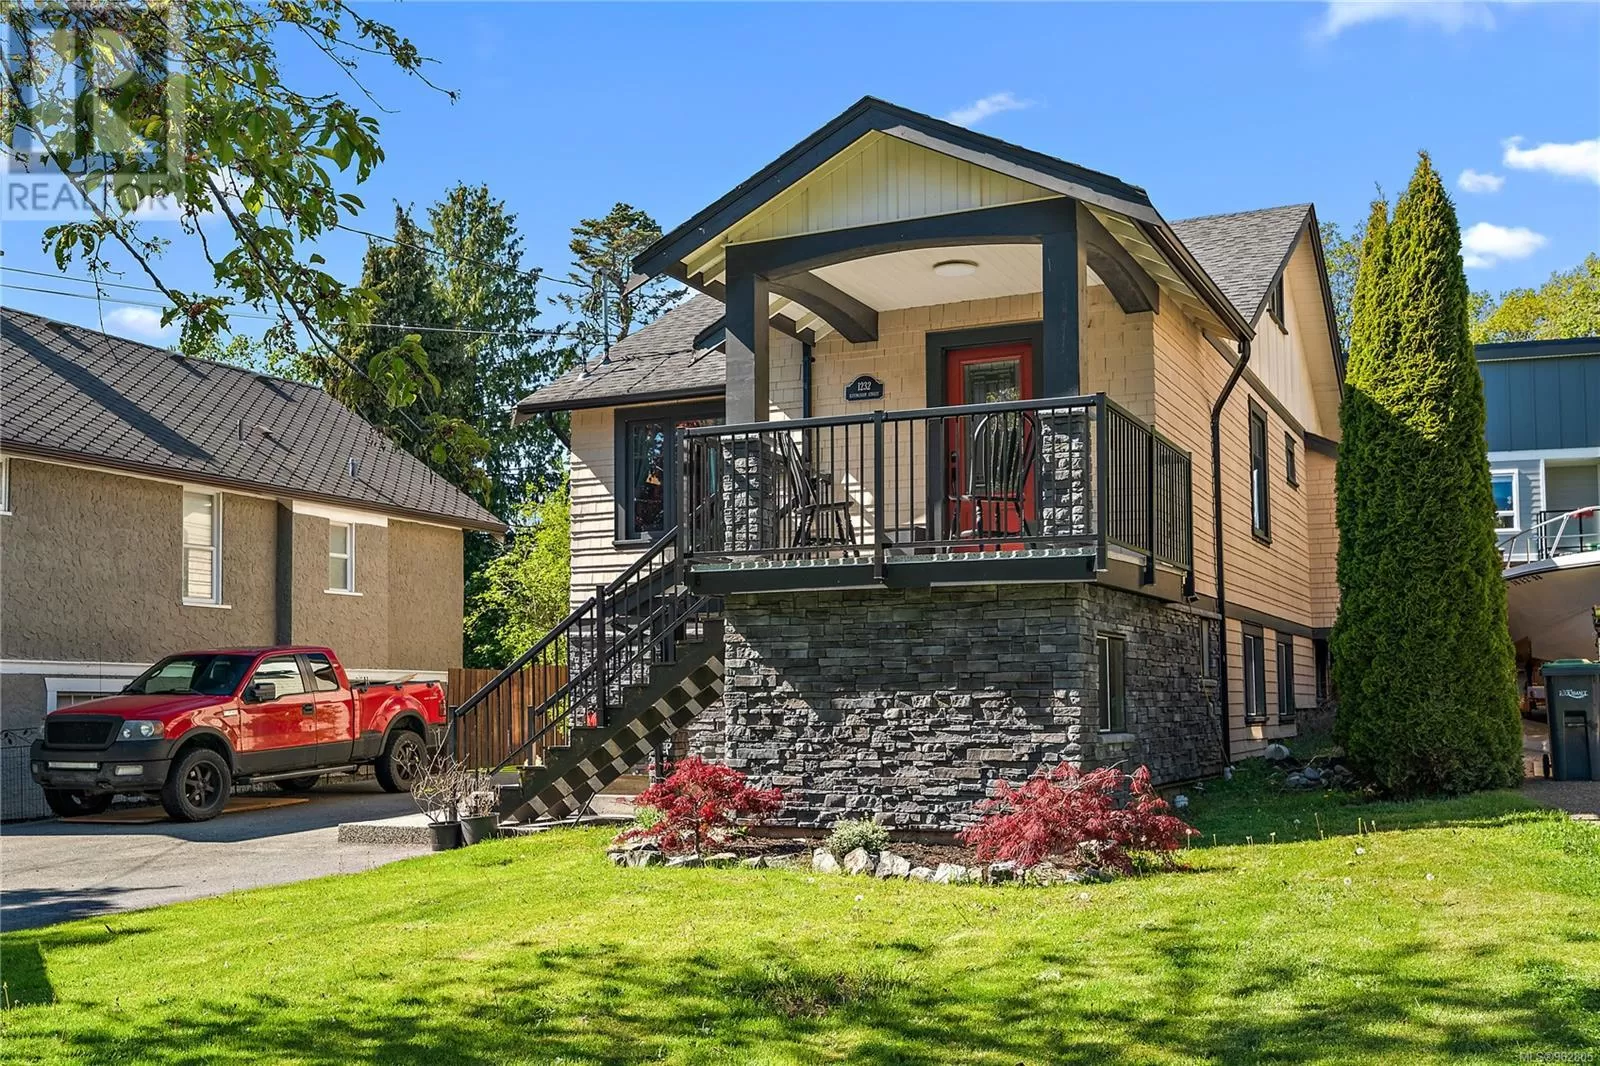 House for rent: 1232 Effingham St, Esquimalt, British Columbia V9A 4Y2